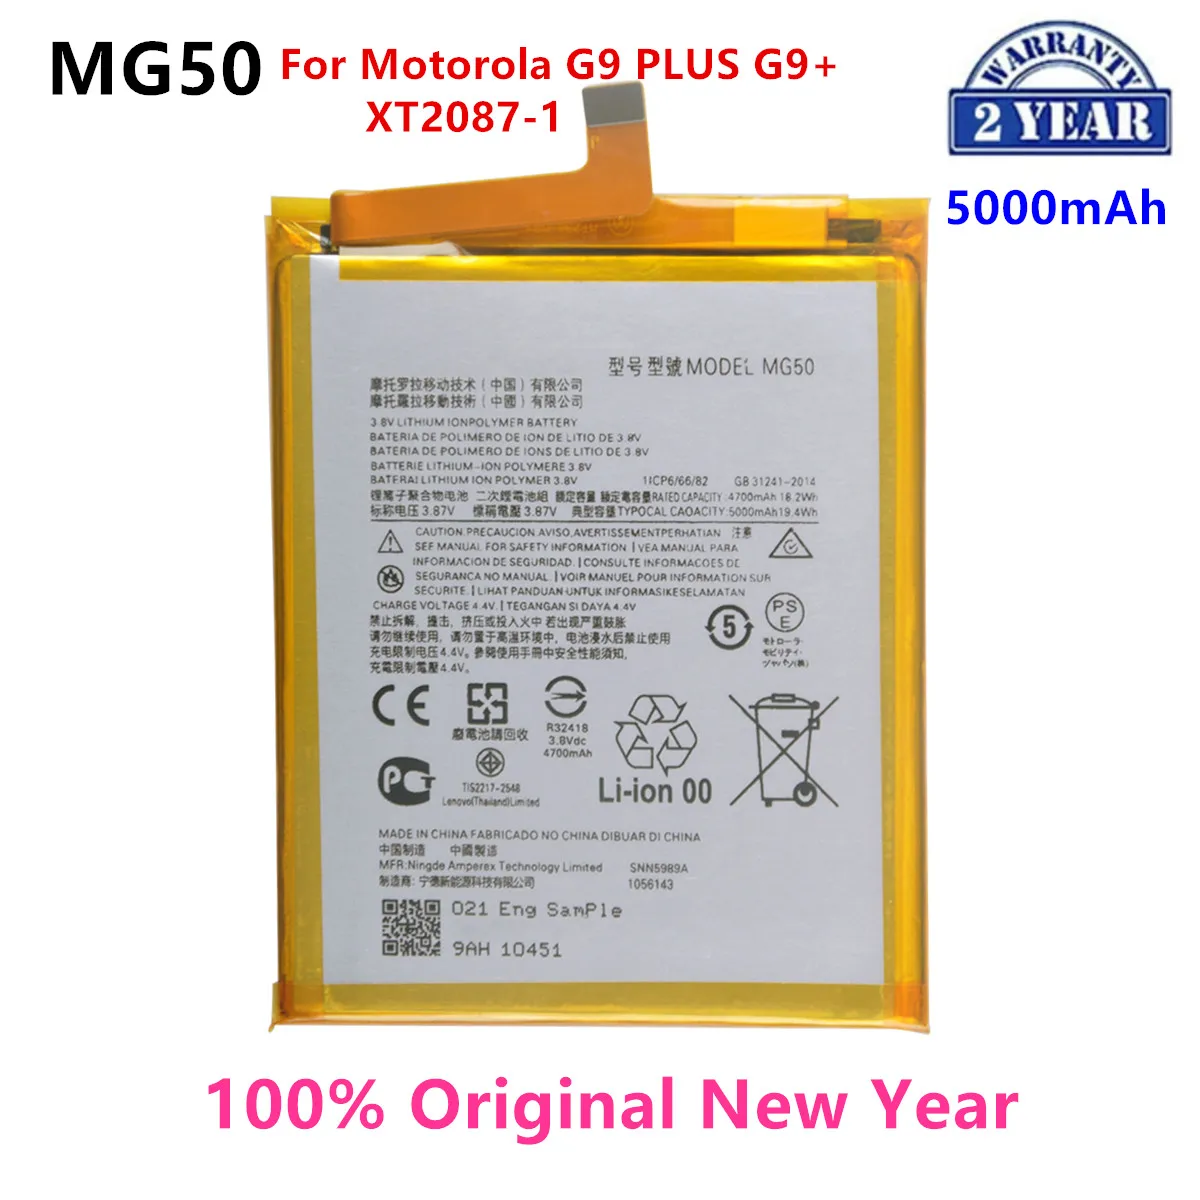 

100% Original MG50 5000mAh Battery For Motorola Moto G9 PLUS G9+ XT2087-1 Phone Batteries